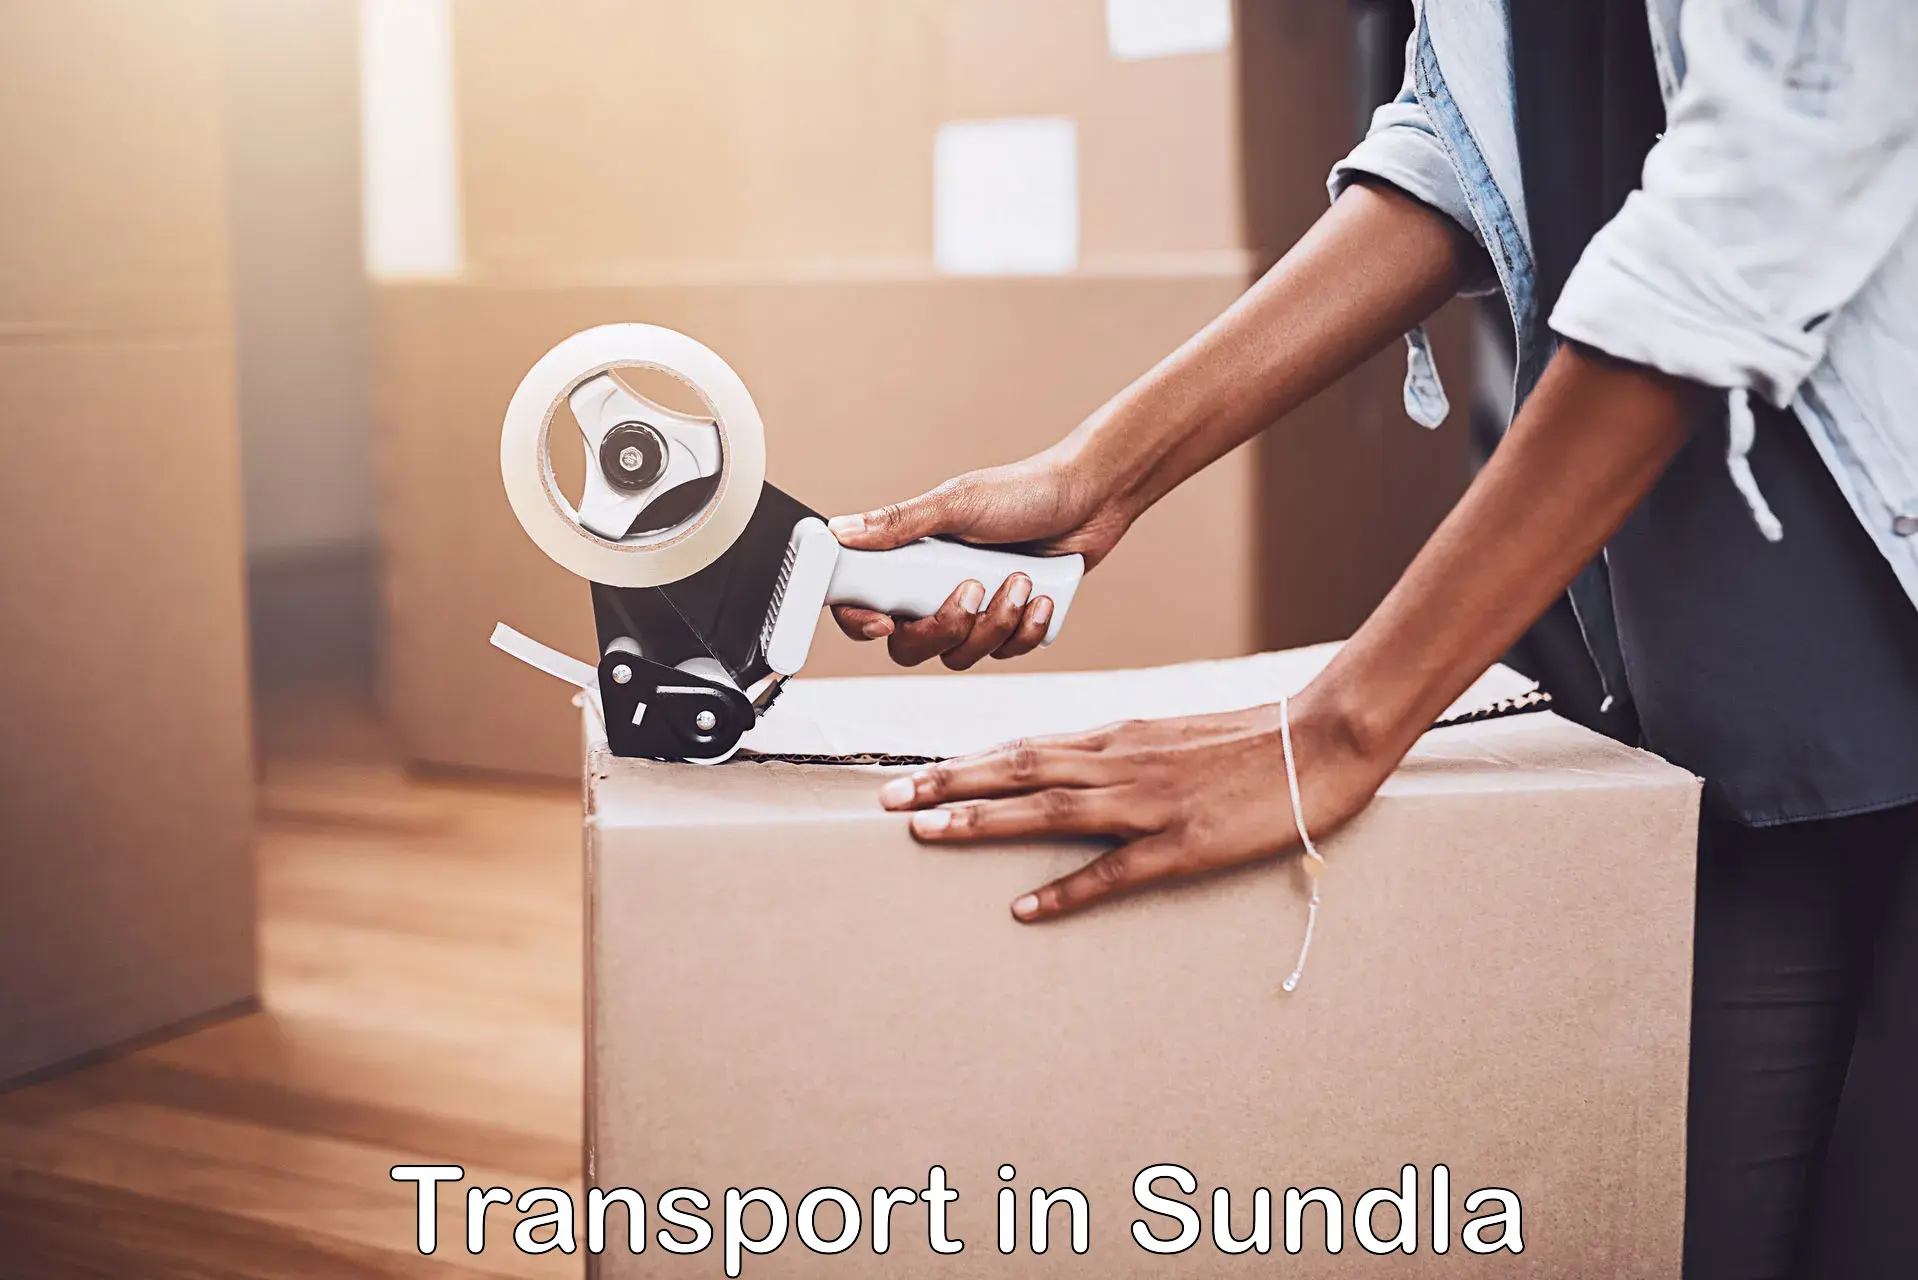 Commercial transport service in Sundla